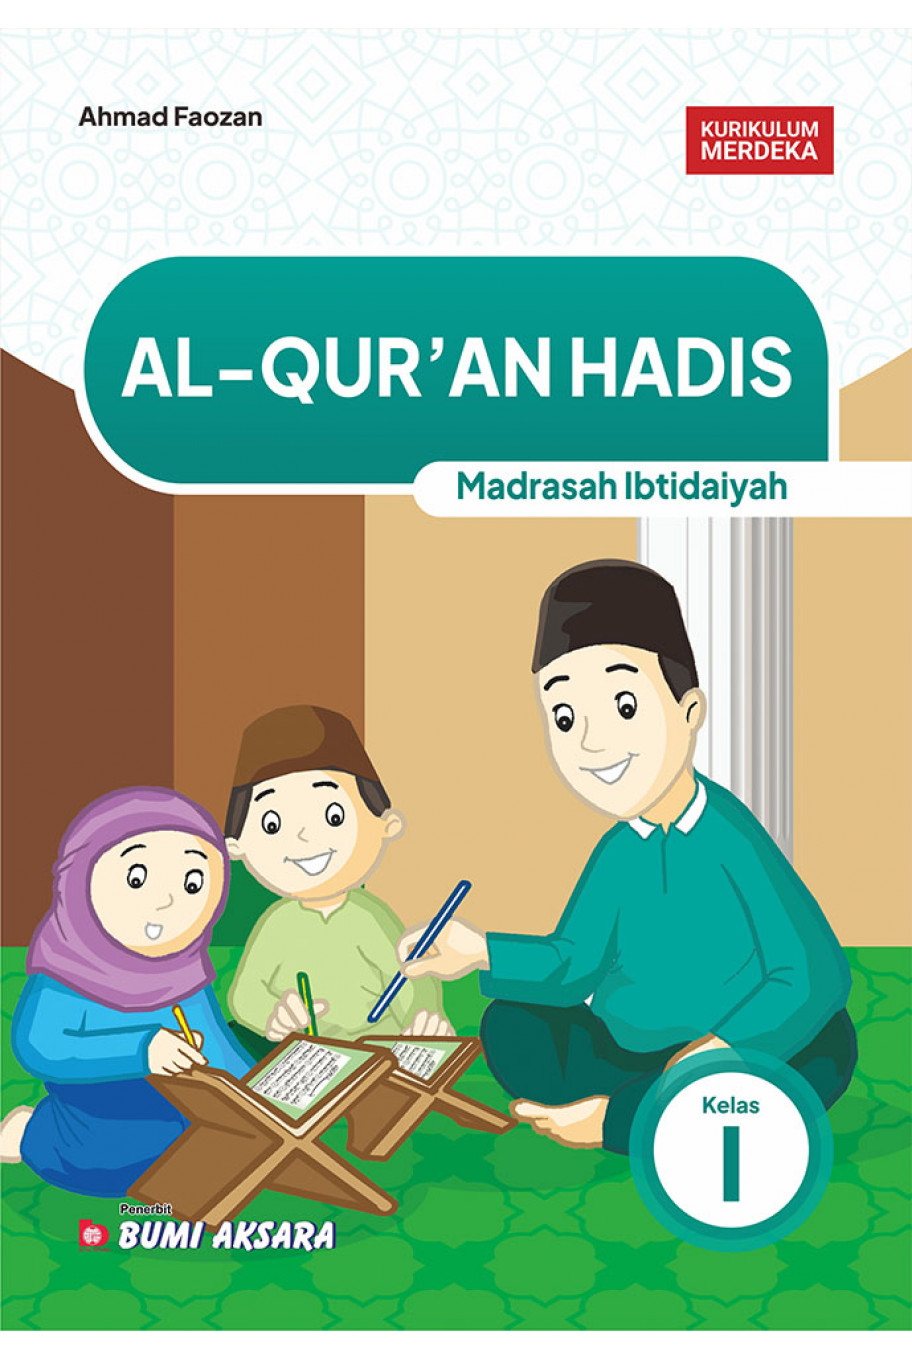 Al-Qur’an Hadis Madrasah Ibtidaiyah Kelas I